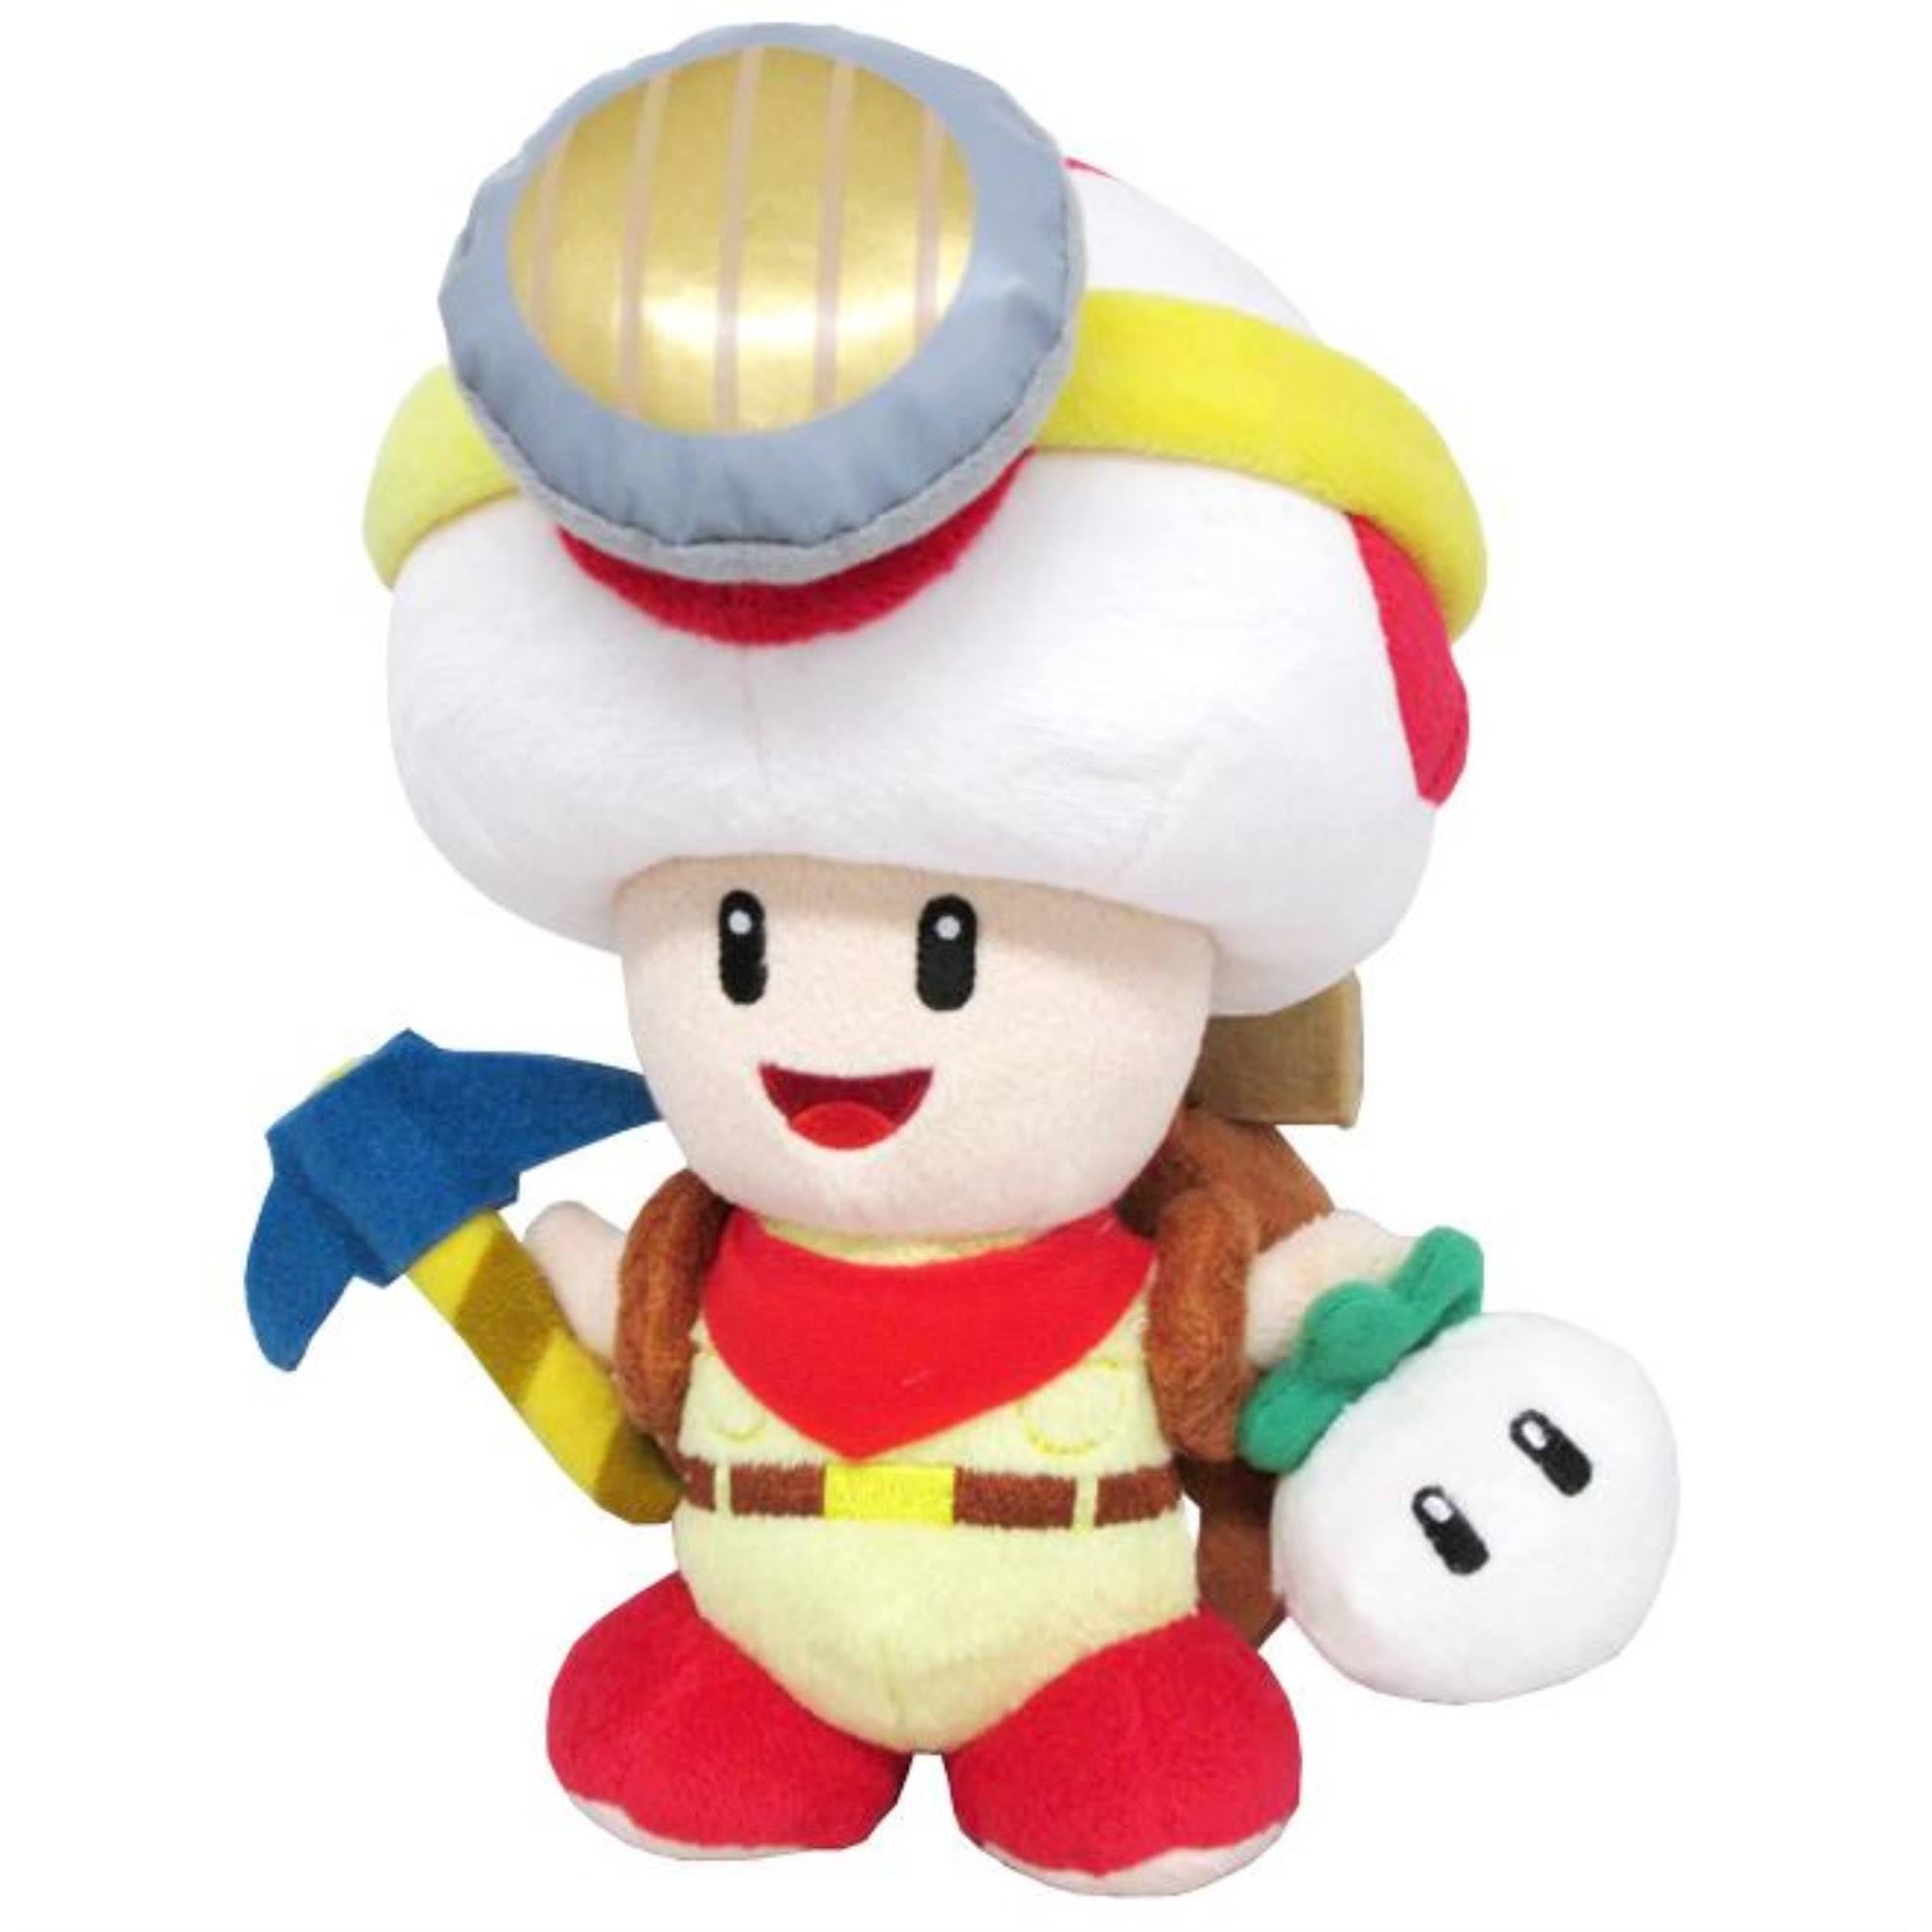 Nintendo Super Mario Captain Toad Standing Plush Toy - 9"